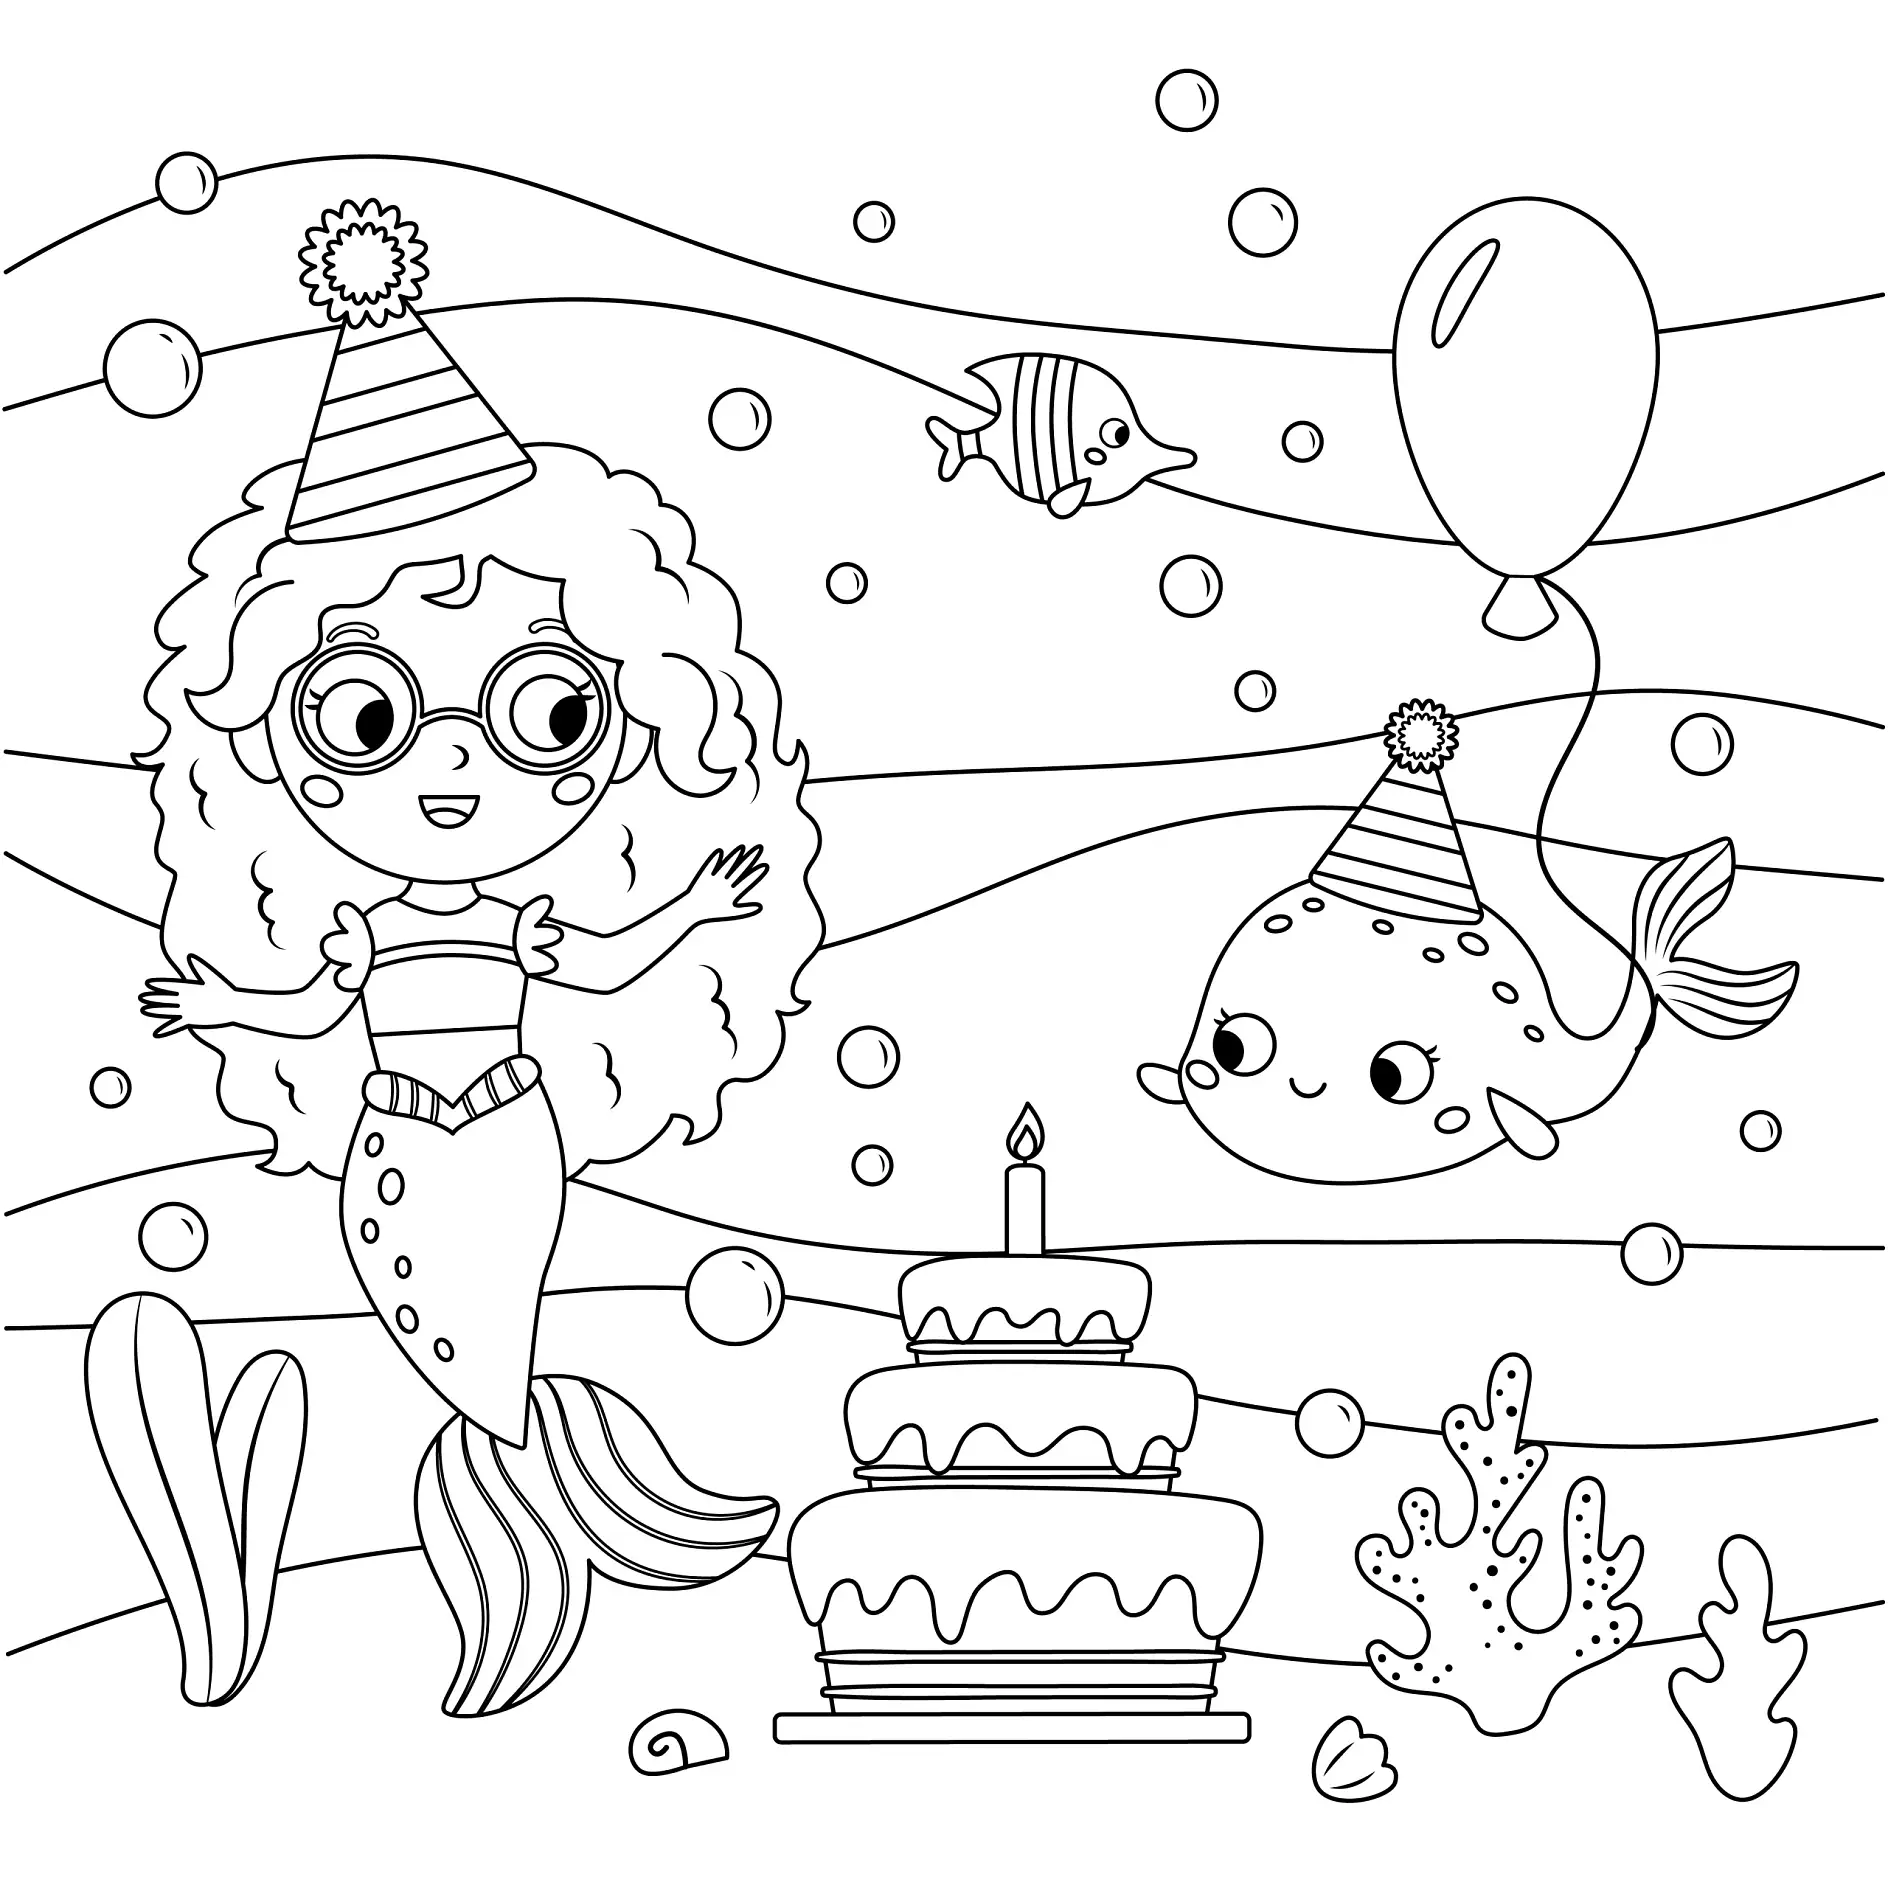 Ausmalbild Meerjungfrau mit Brille feiert eine Party mit einem Fisch und einer Torte